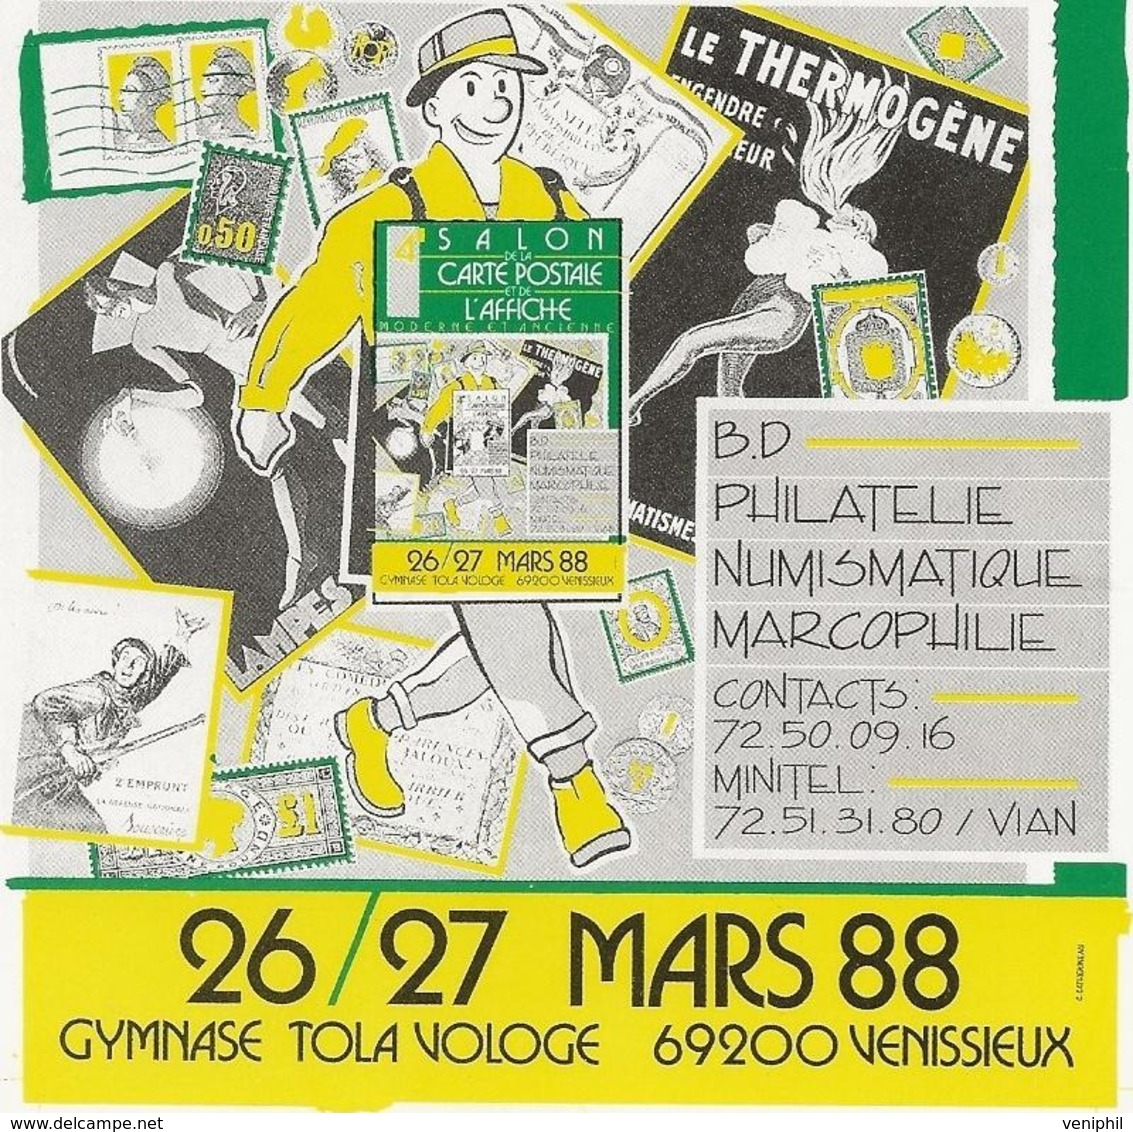 VENISSIEUX - 4 EME SALON DE LA CARTE POSTALE ET DE L'AFFICHE -MARS 1988 - Bourses & Salons De Collections